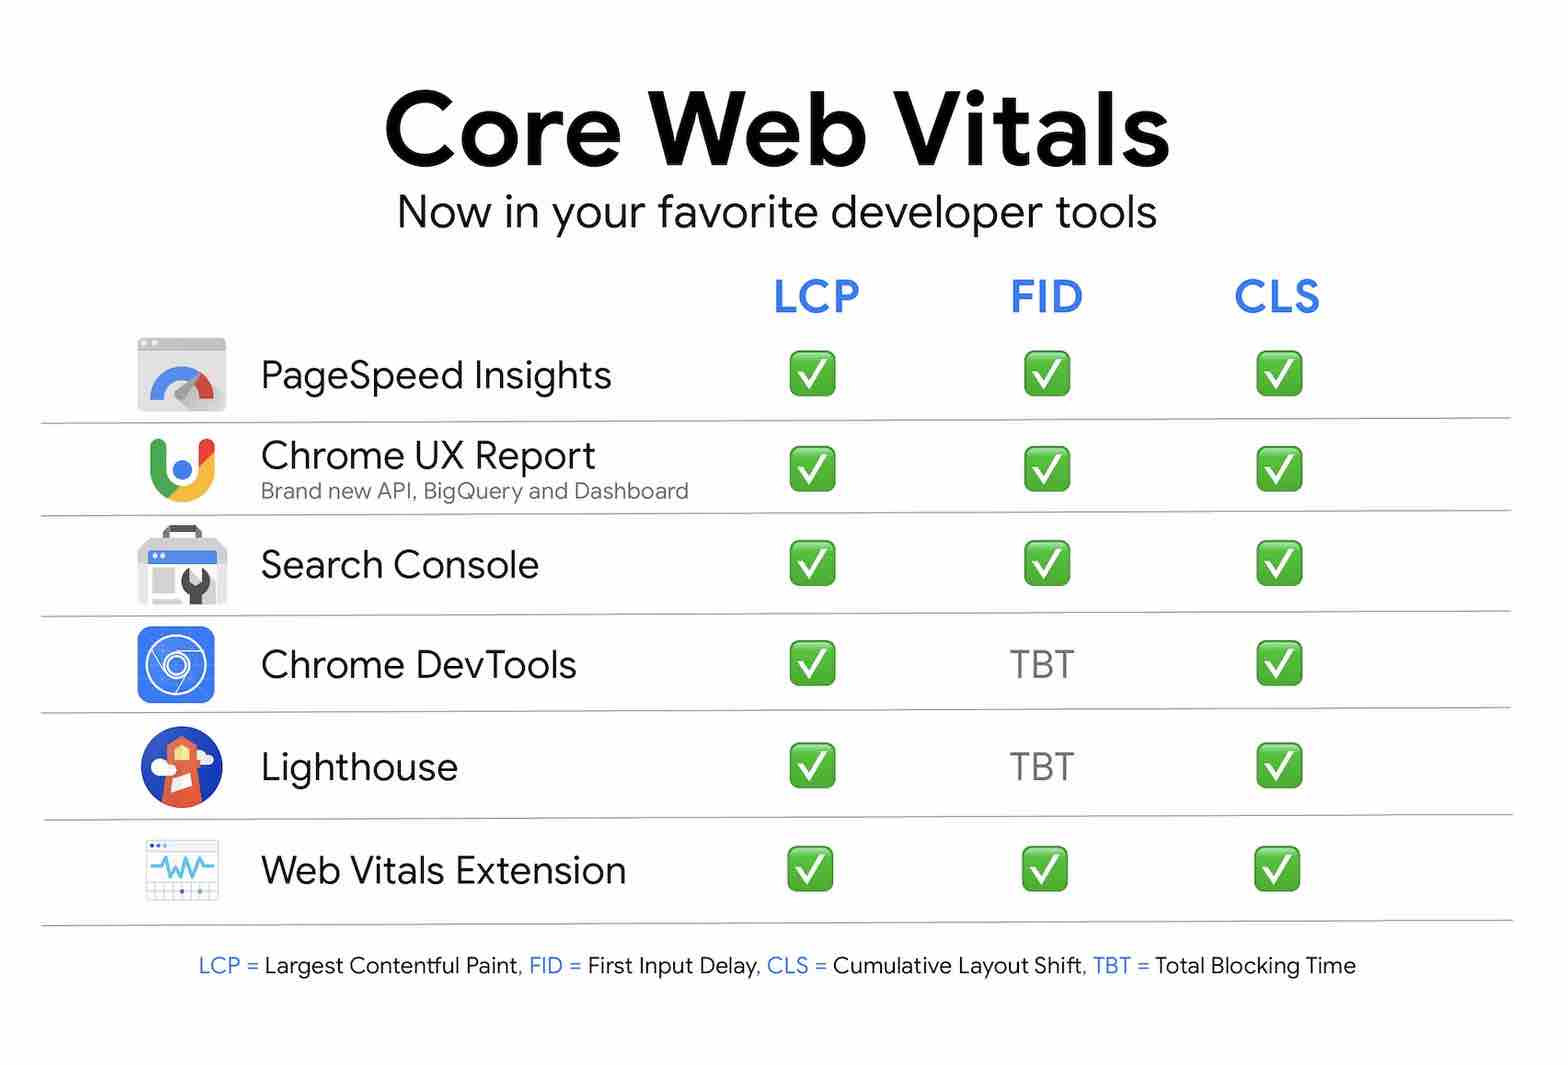 Google propose différents outils pour mesurer les Core Web Vitals sur WordPress. 